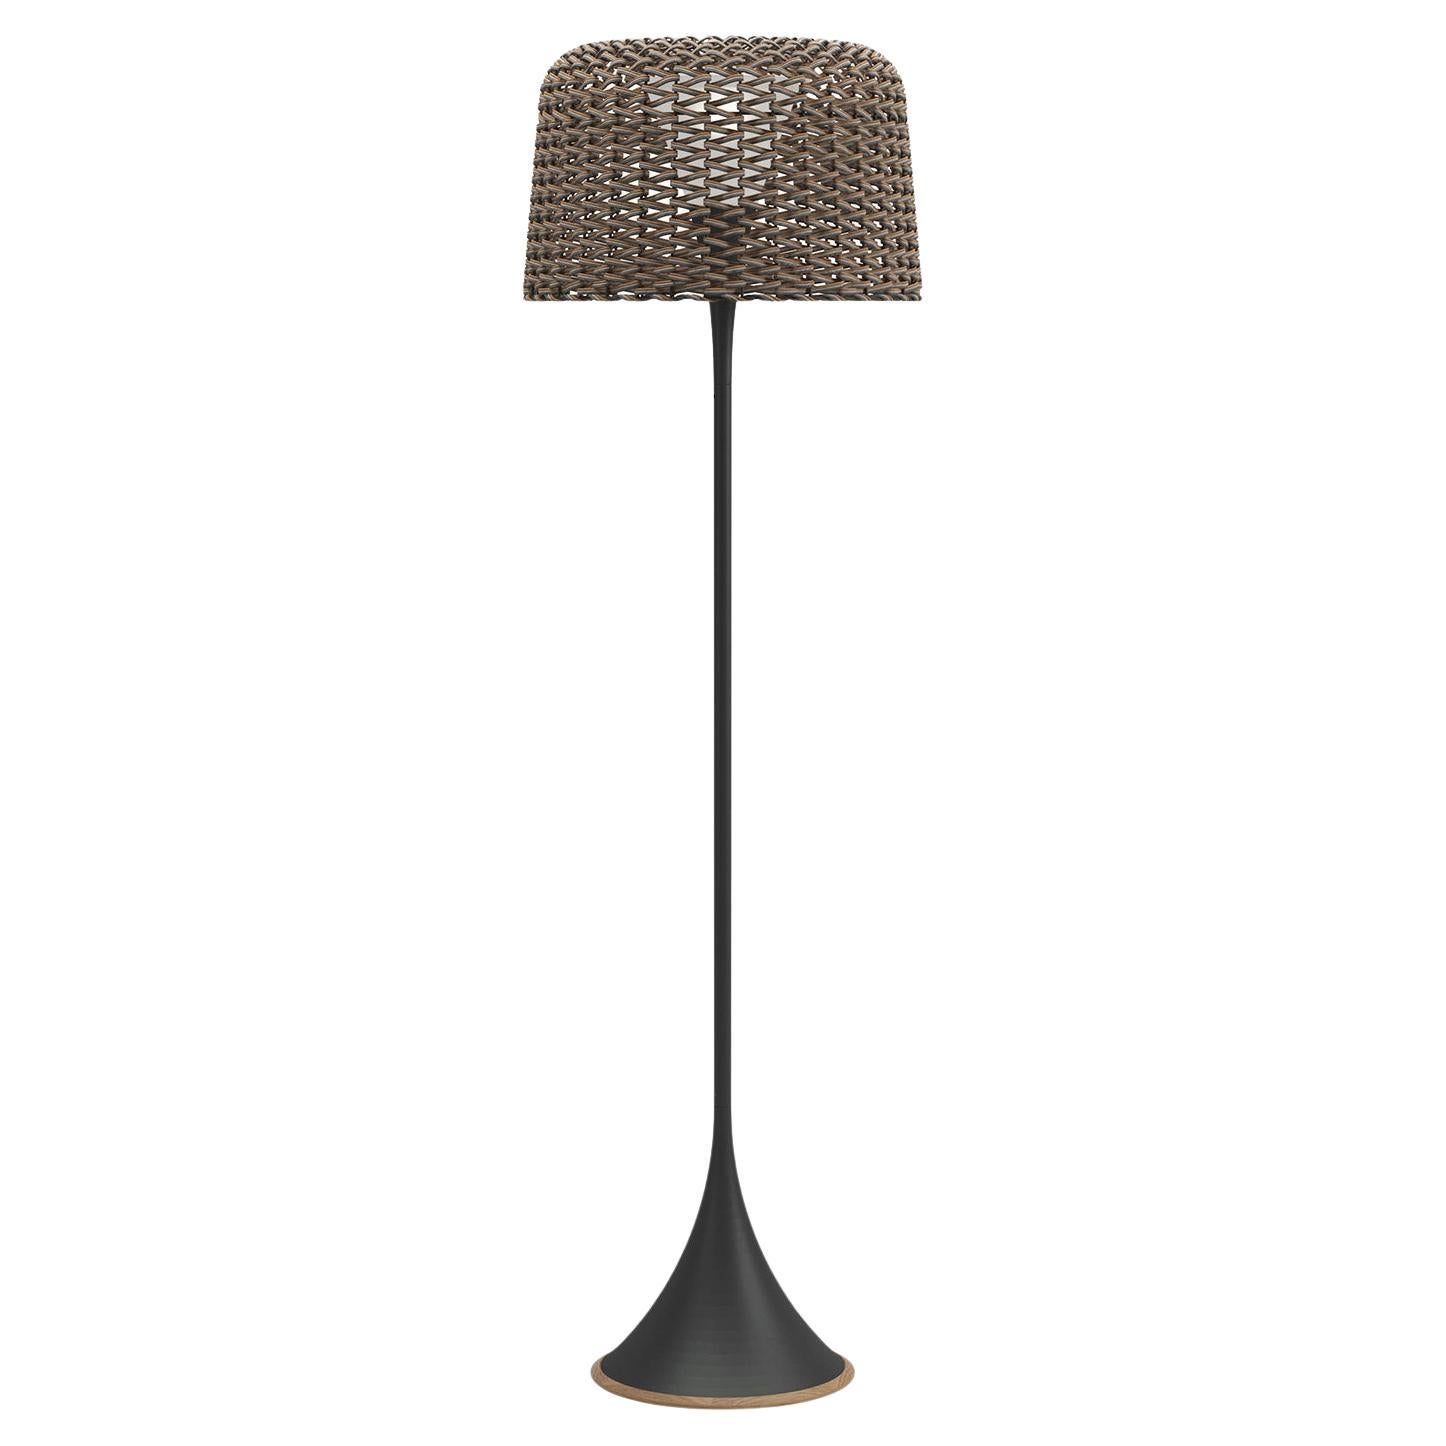 Wicker Outdoor Black Floor Lamp For Sale